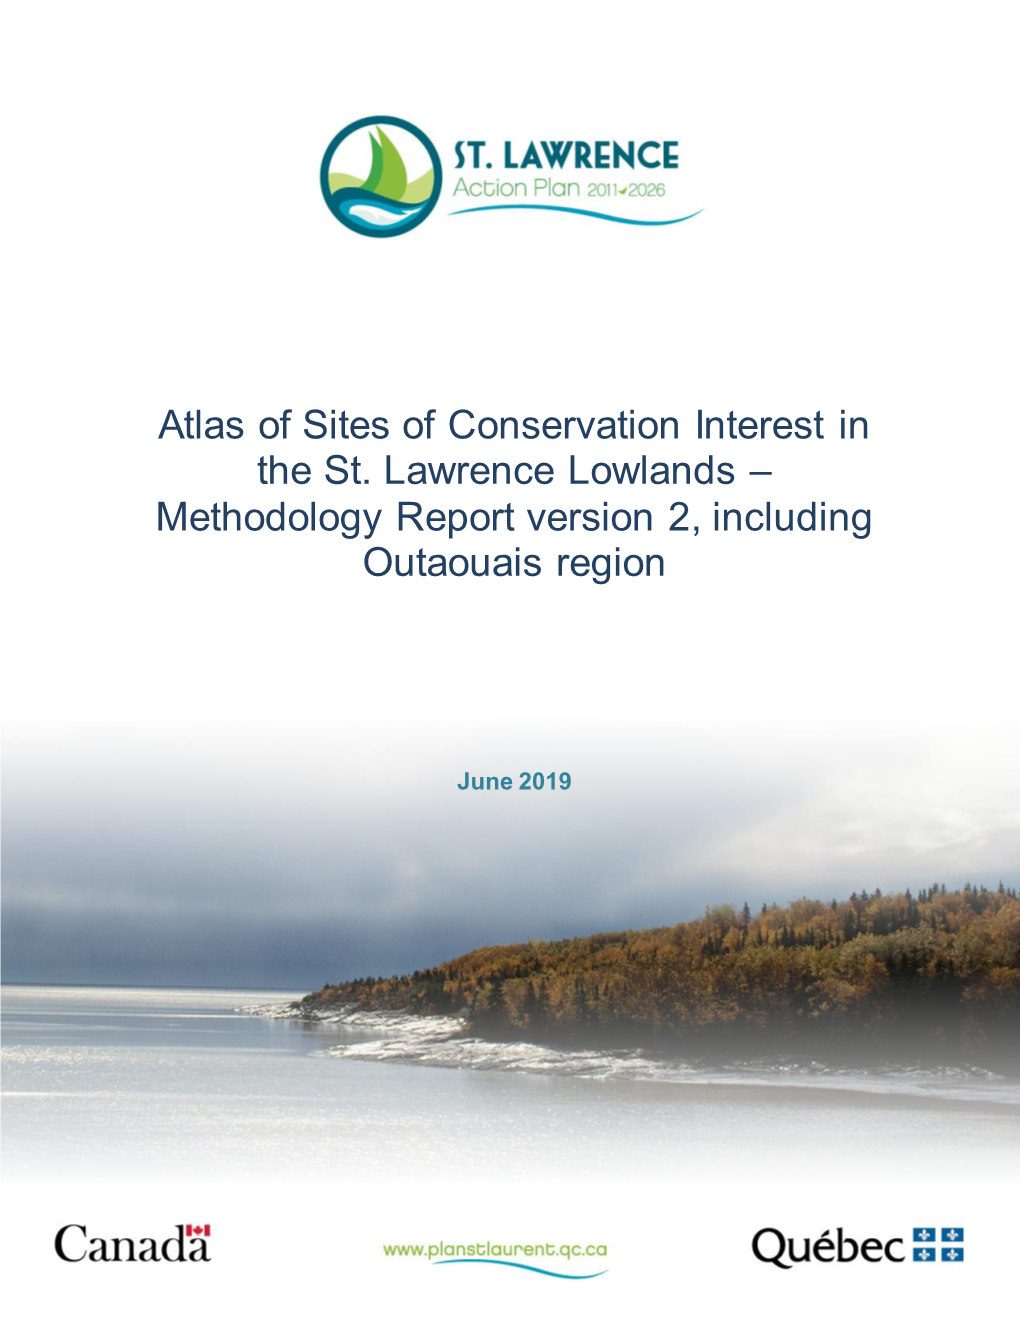 Atlas Des Territoires D'intérêt Pour La Conservation Dans Les Basses